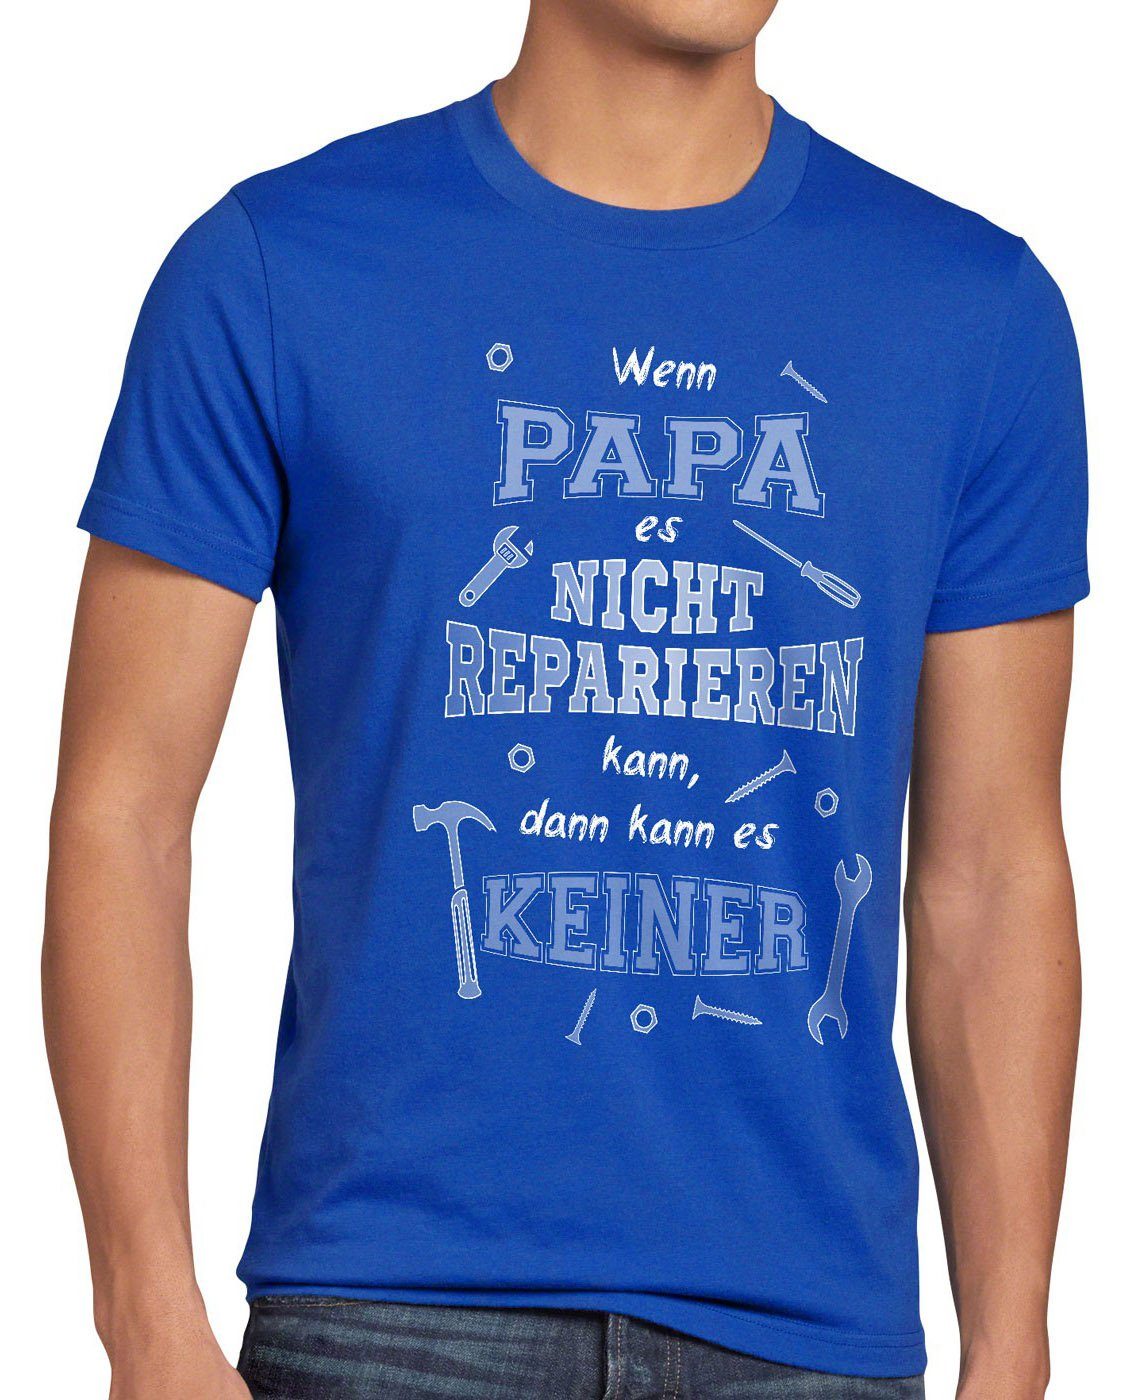 style3 Print-Shirt Herren T-Shirt Wenn Papa nicht reparieren kann es keiner  Shirt Spruch Funshirt